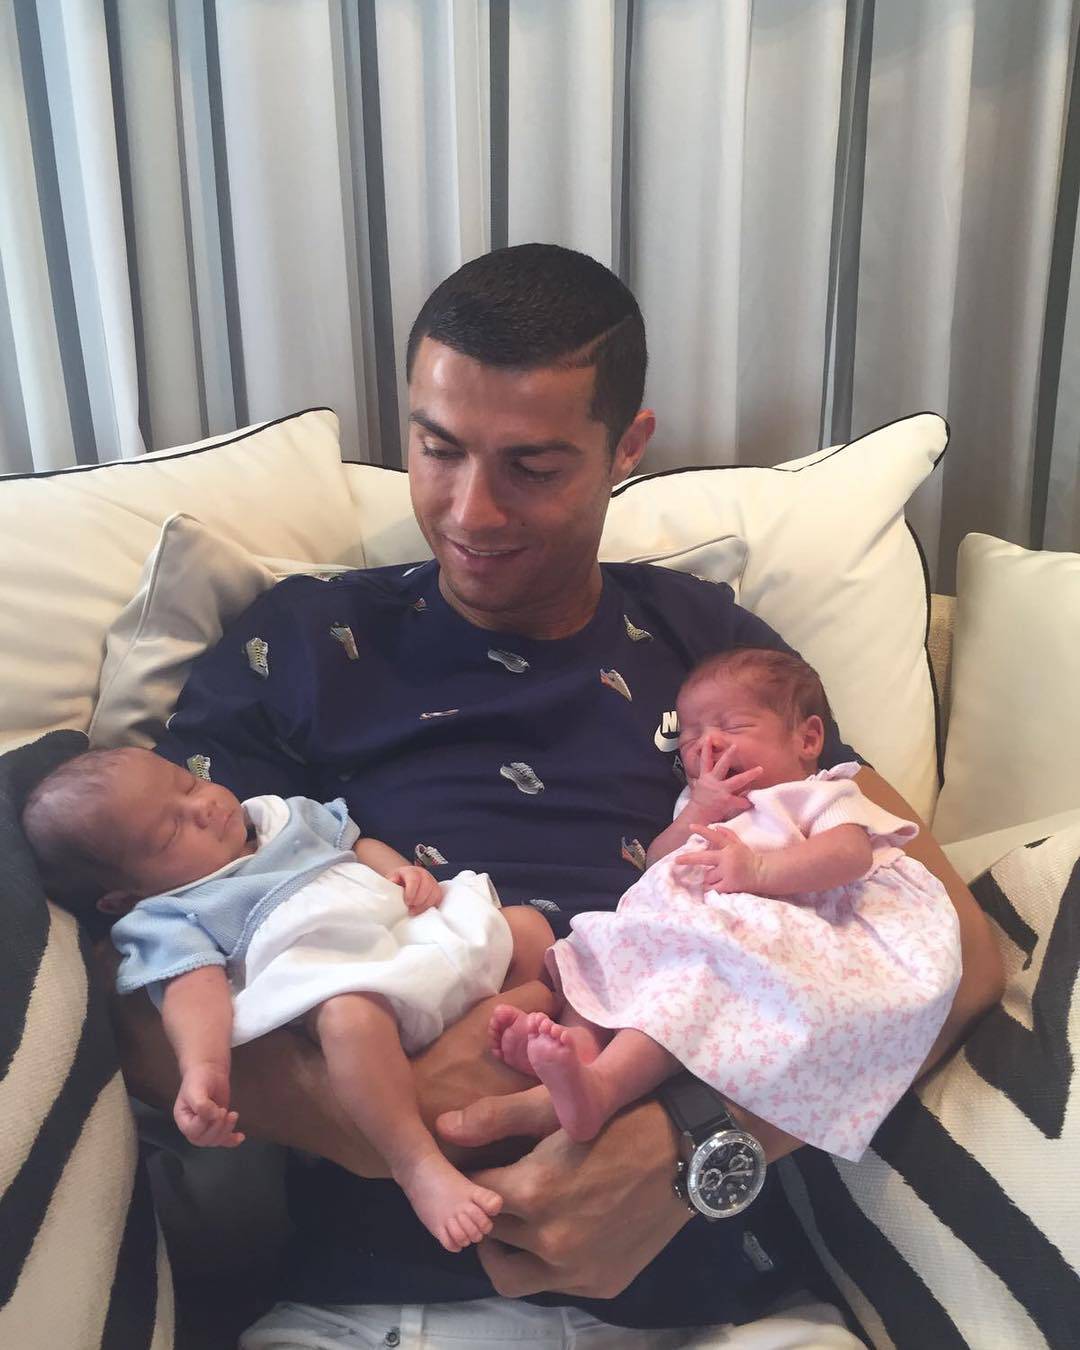 Ronaldo blizance platio milijun kuna; majka ima sportske gene